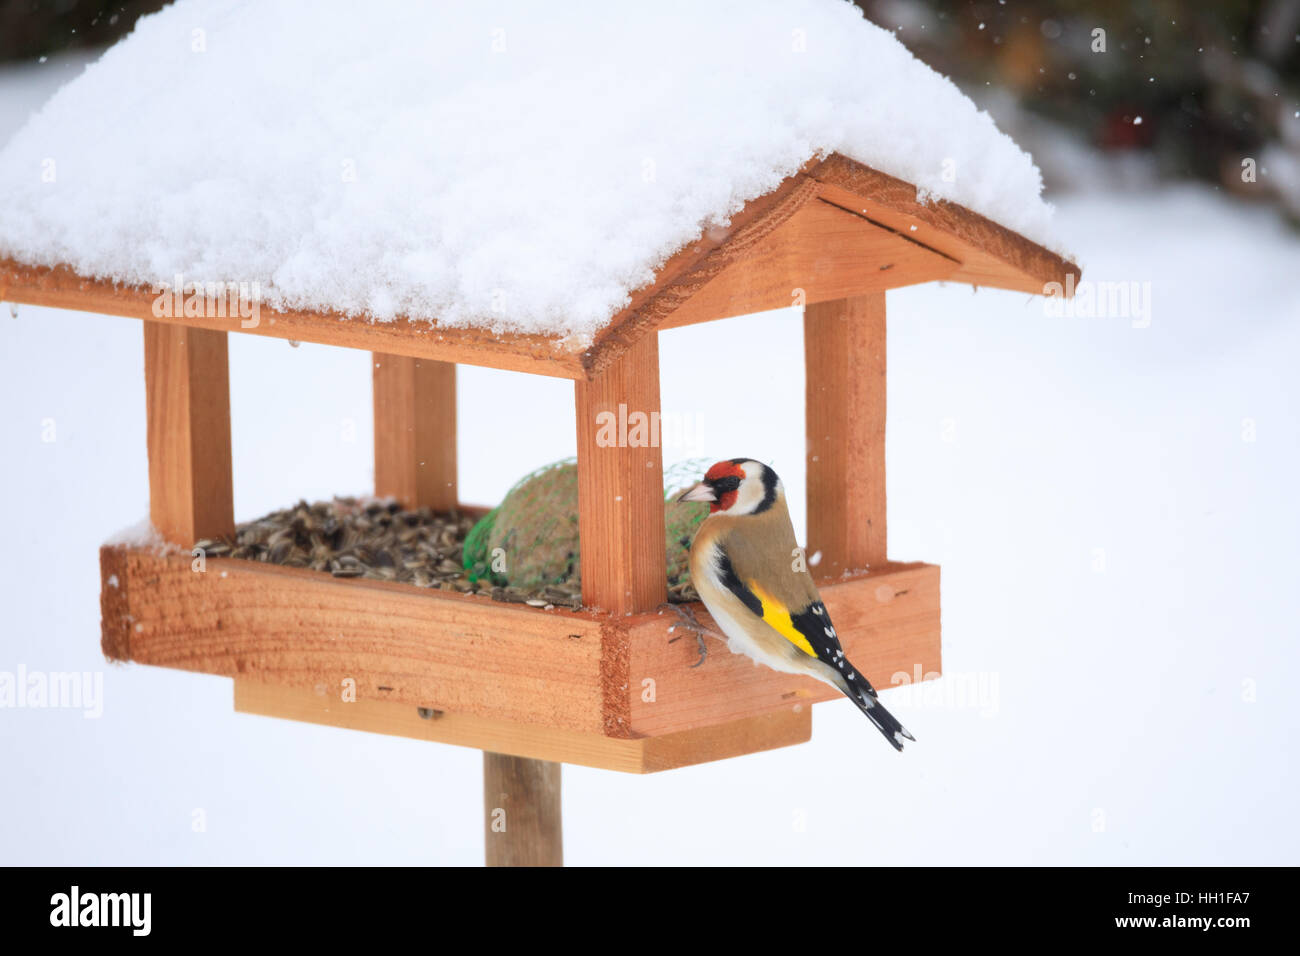 Cardellino europeo o cardellino (Carduelis carduelis) alimentazione in modo semplice in casa legno Bird Feeder, birdhouse installato su giardino d inverno in giornata nevosa Foto Stock